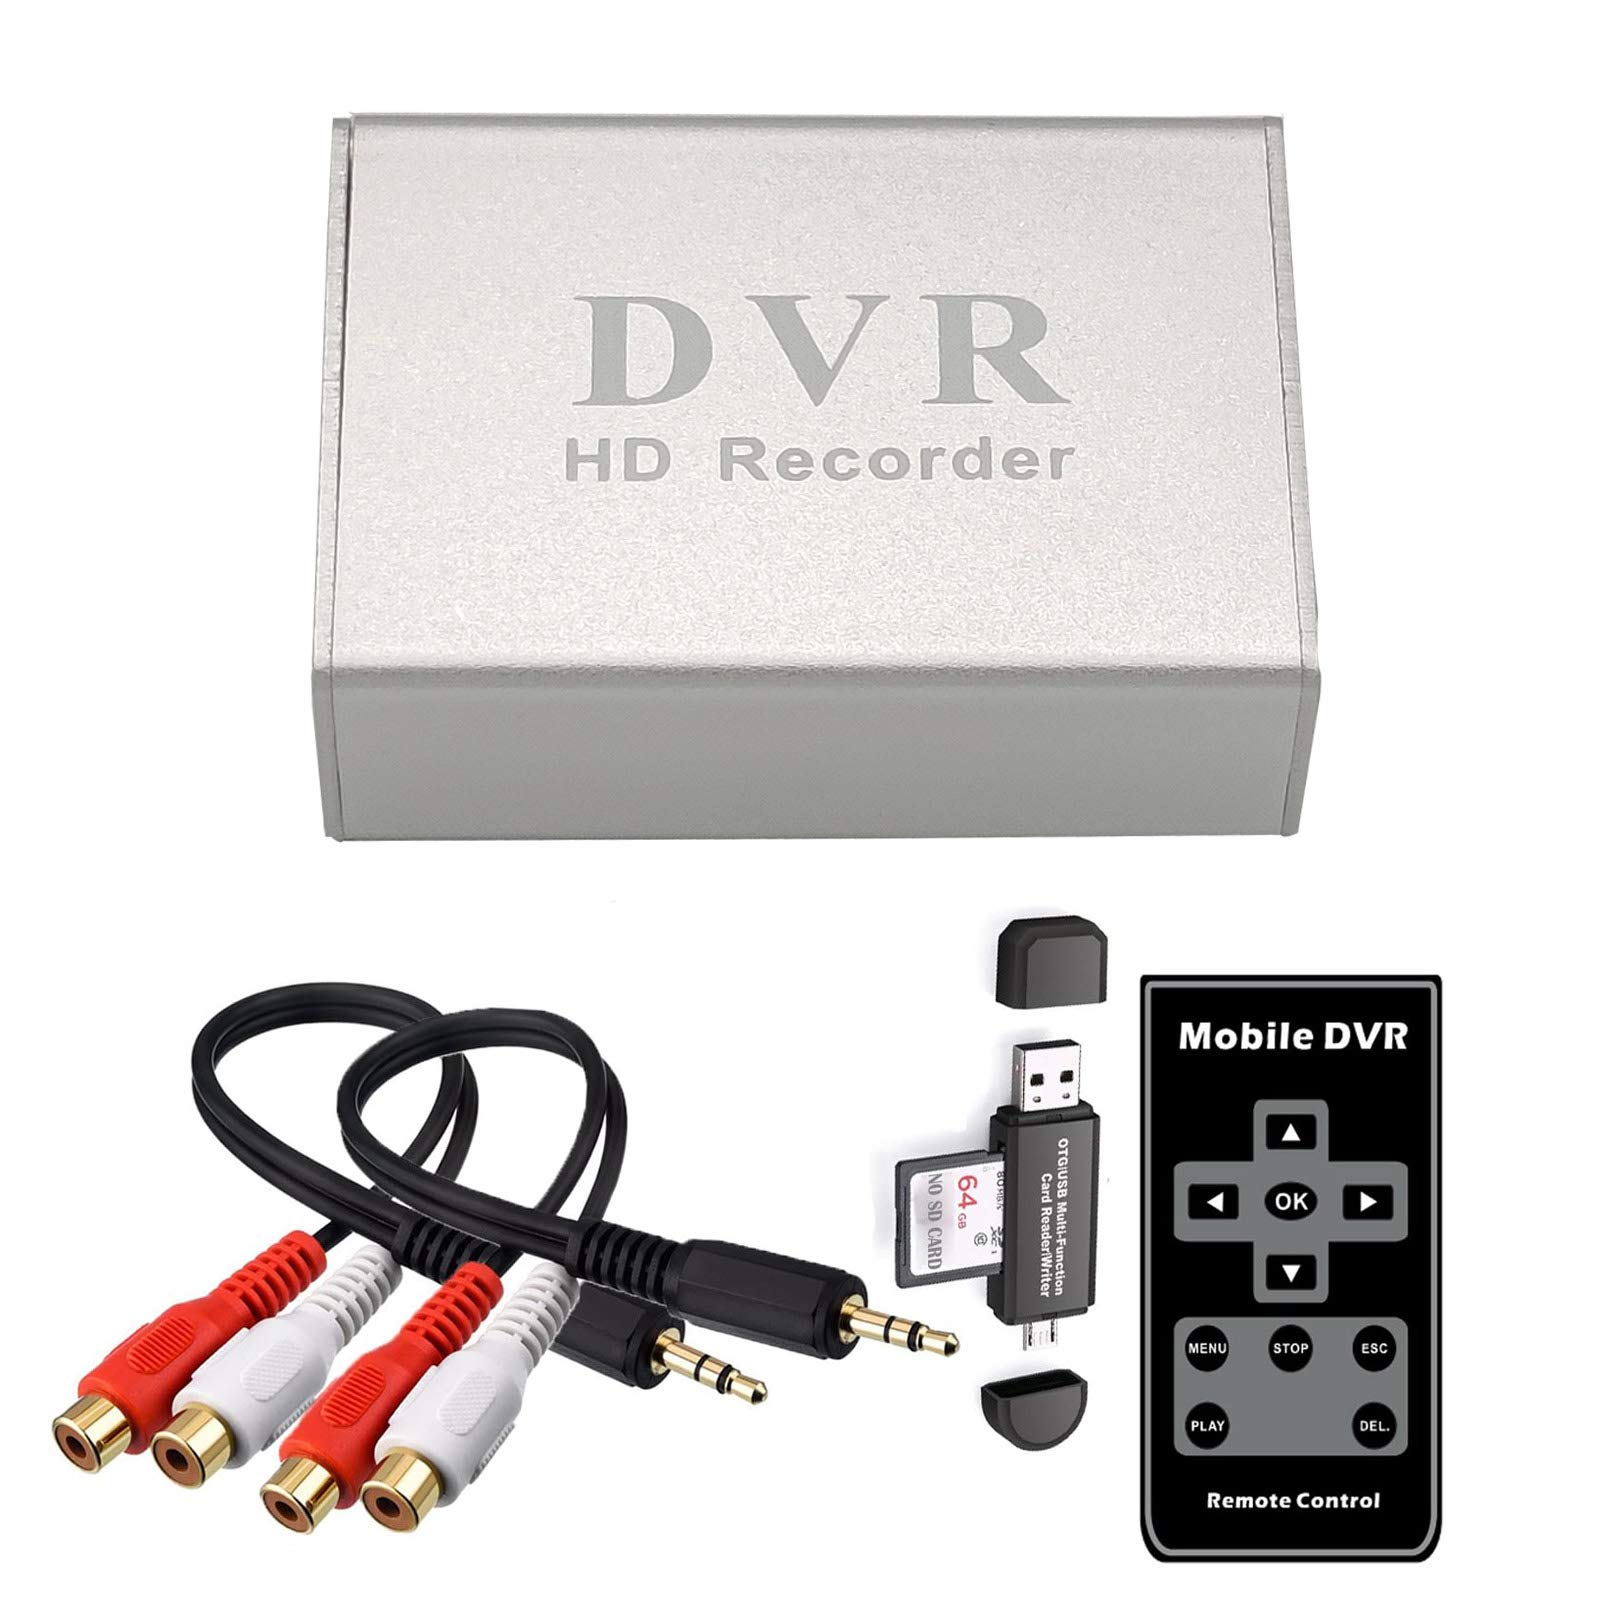 GRACETOP Mini-DVR Videorekorder/Video-AV-Aufnahme, unterstützt Video auf TF/SD-Karte, mit Fernbedienung und Netzteil 5 V 2 A, kein Computer erforderlich